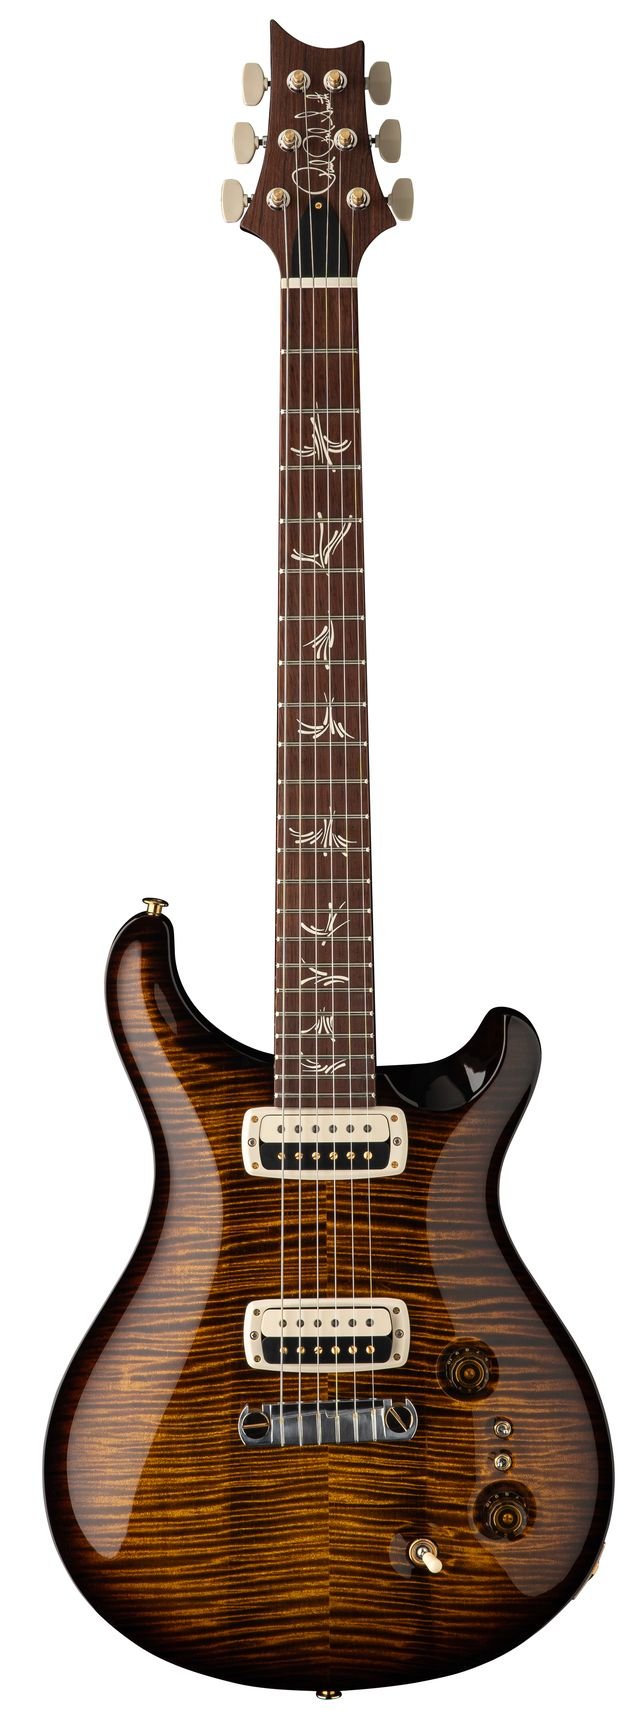  Bitte auf das Bild klicken um weitere Informationen zu erhalten  Pauls Guitar 10 Top  Black Gold Burst  inklusive PRS Koffer  unverbindliche Preisempfehlung:  6.485,—€  non 10 Top 5.590,—€       